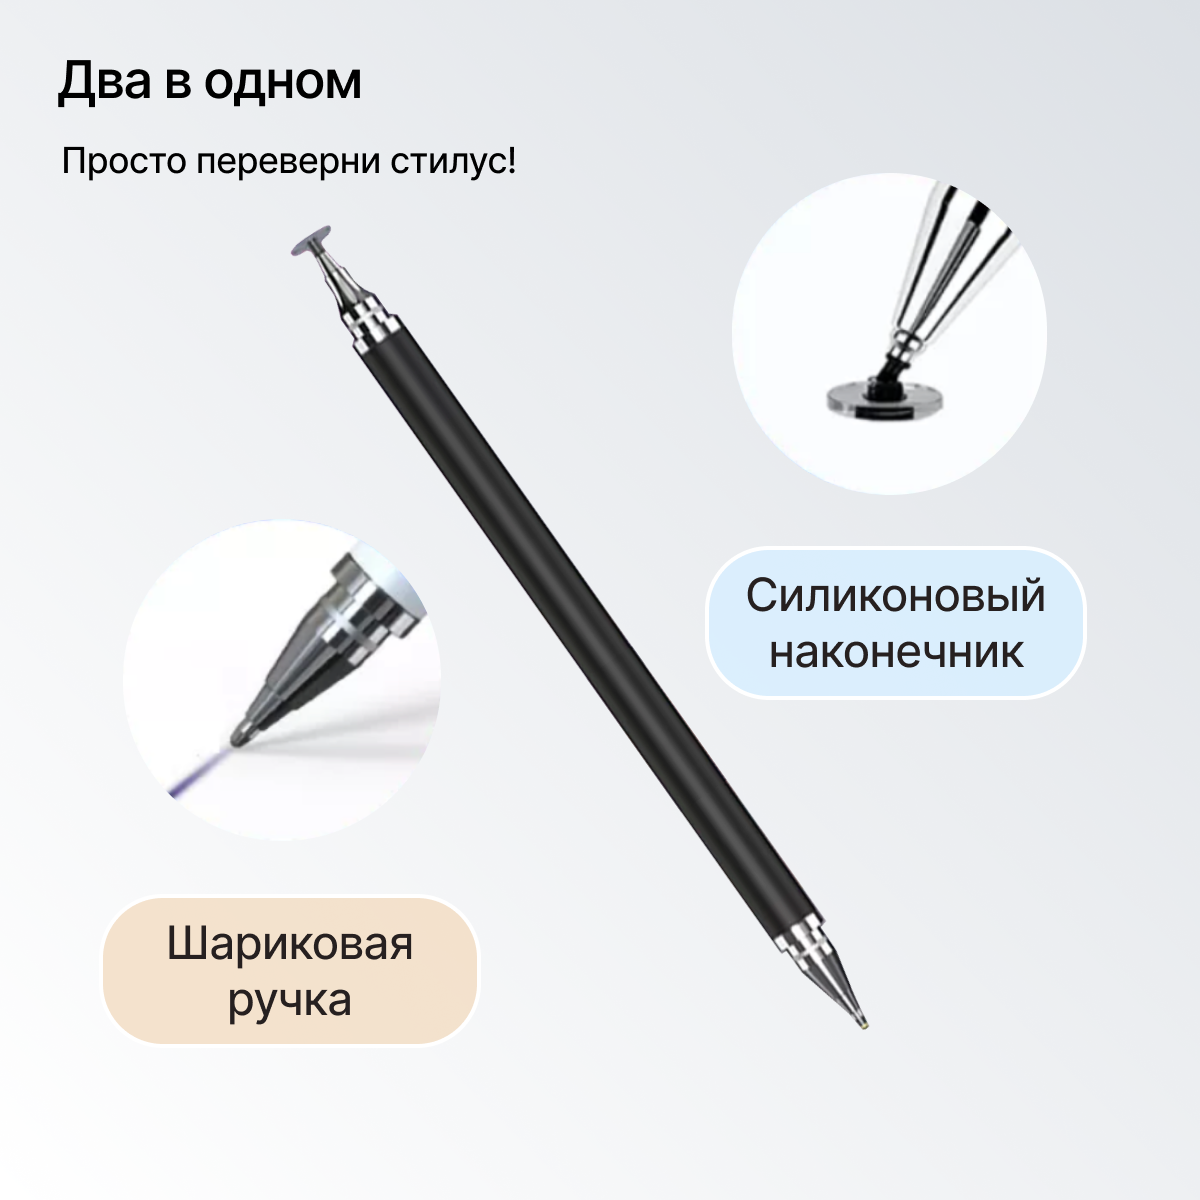 Cтилус универсальный для телефона и планшета с ручкой